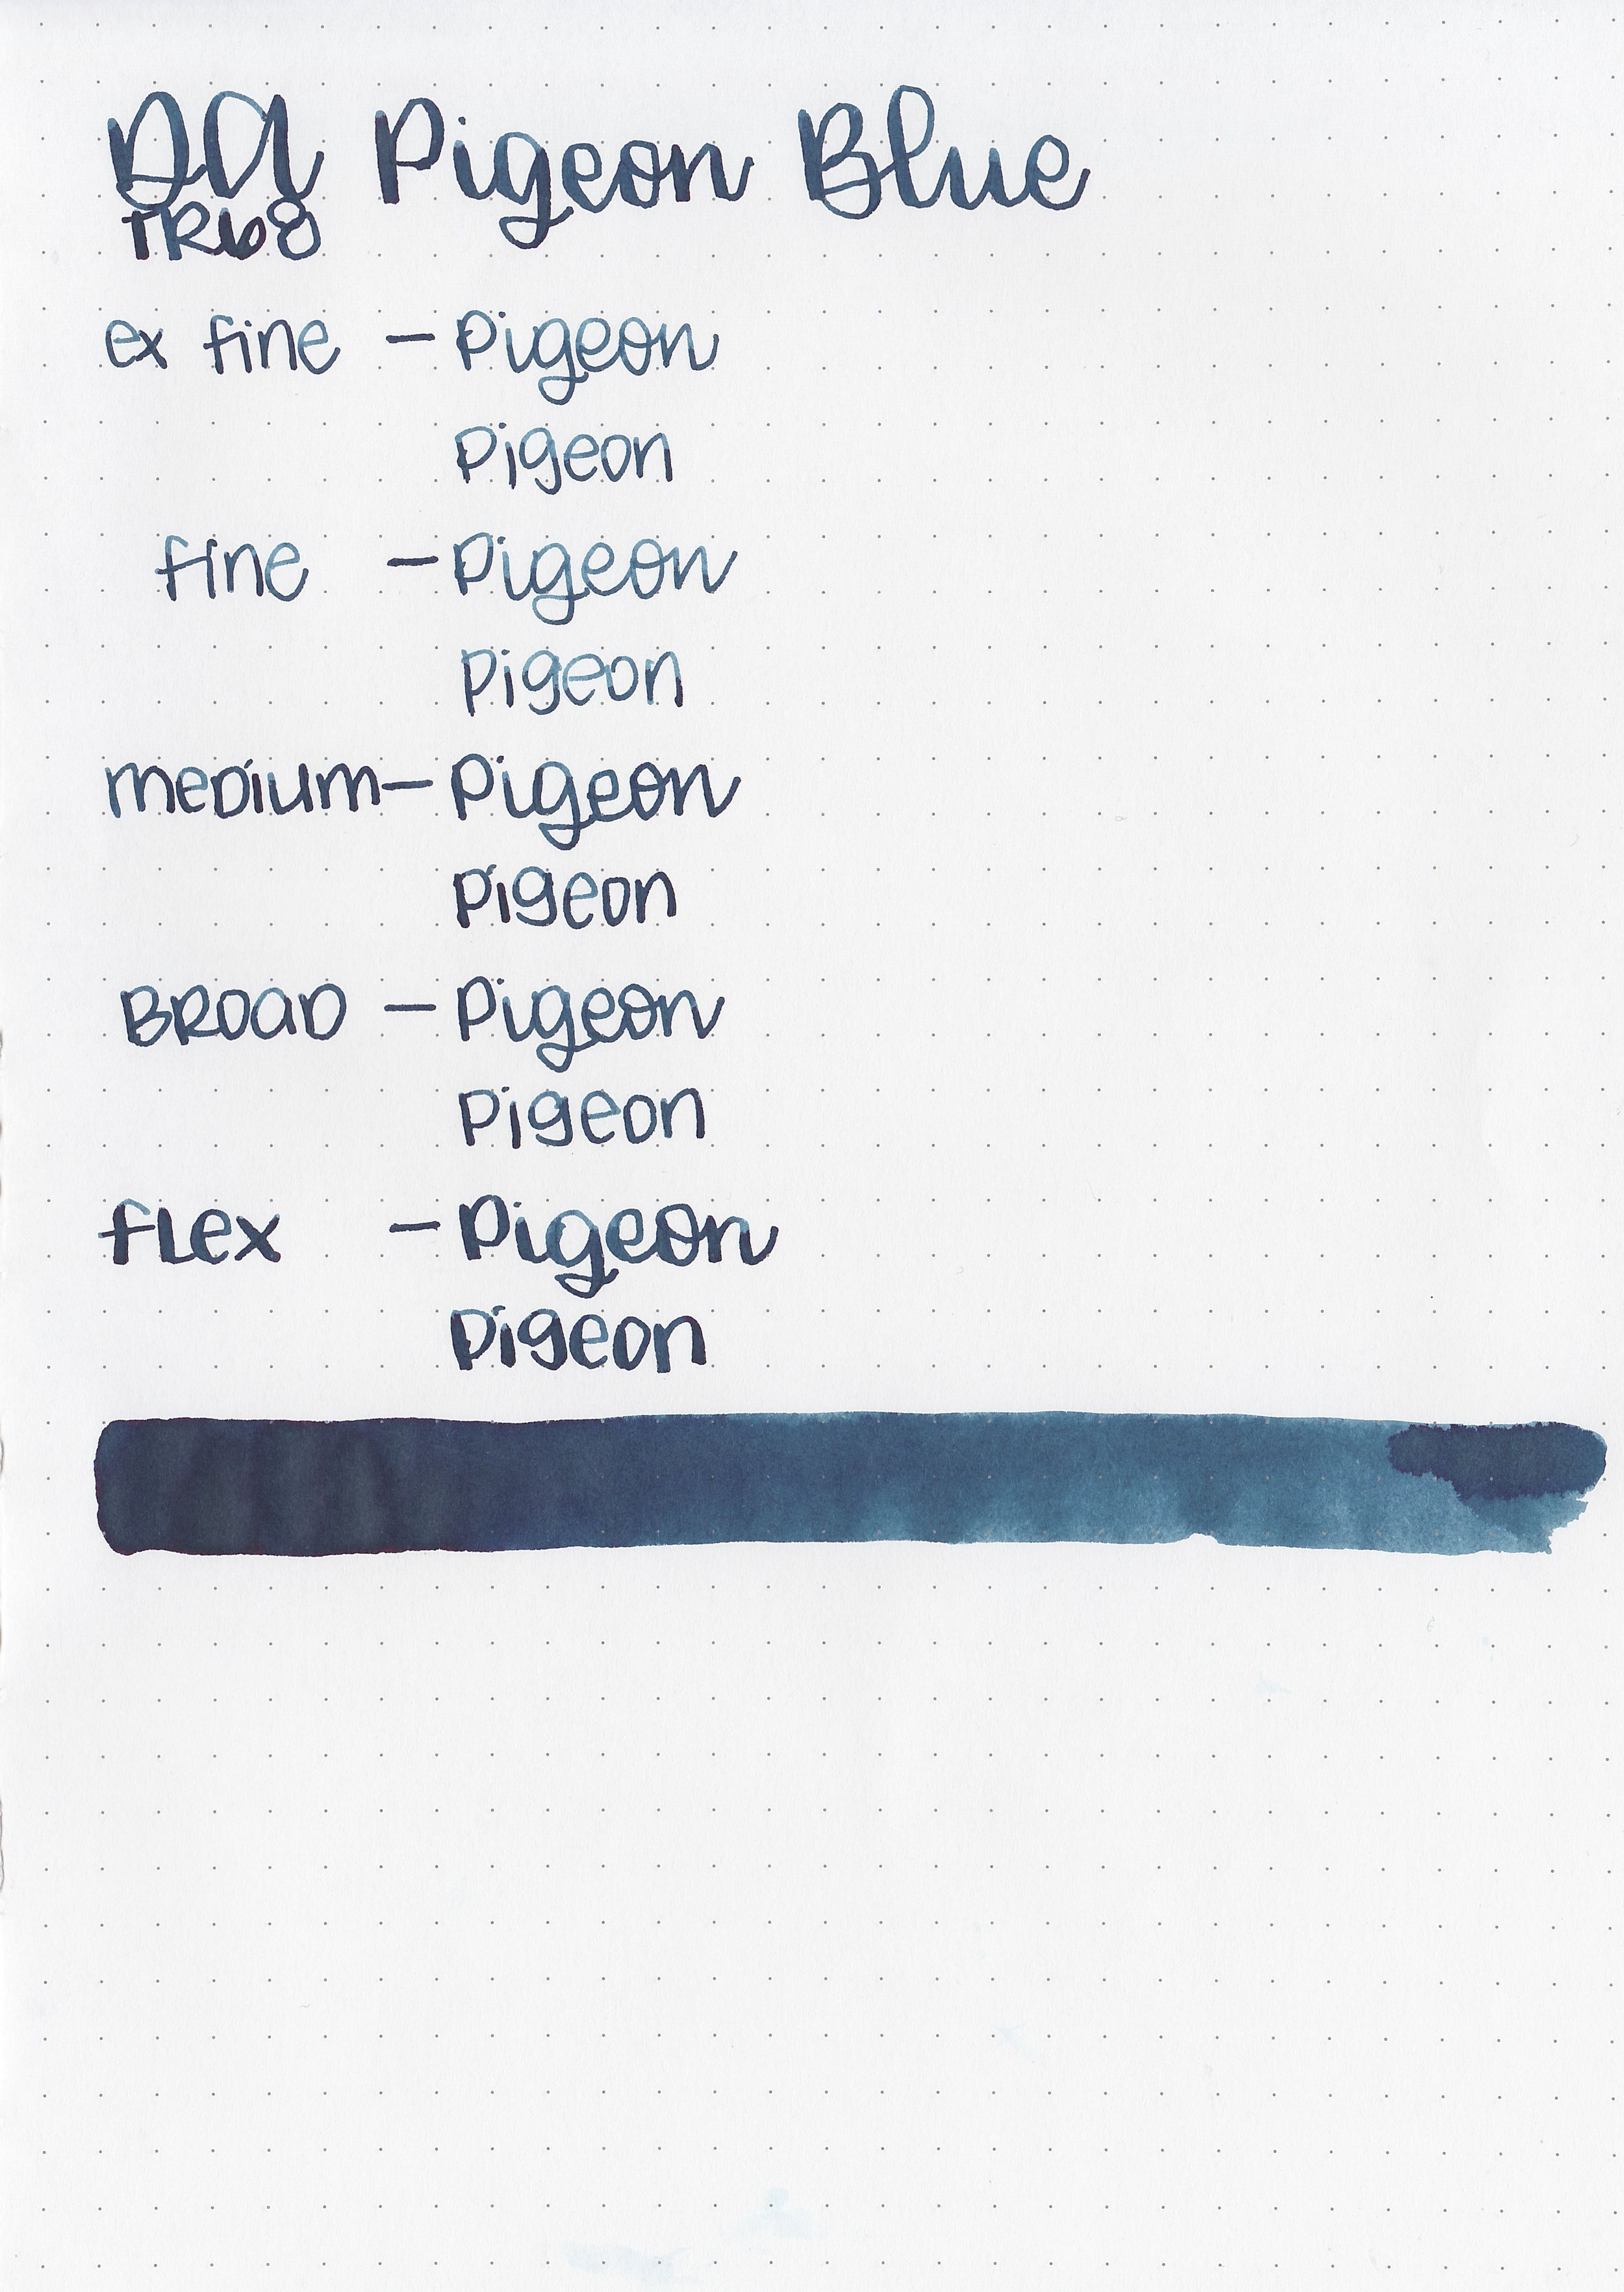 da-pigeon-blue-7.jpg